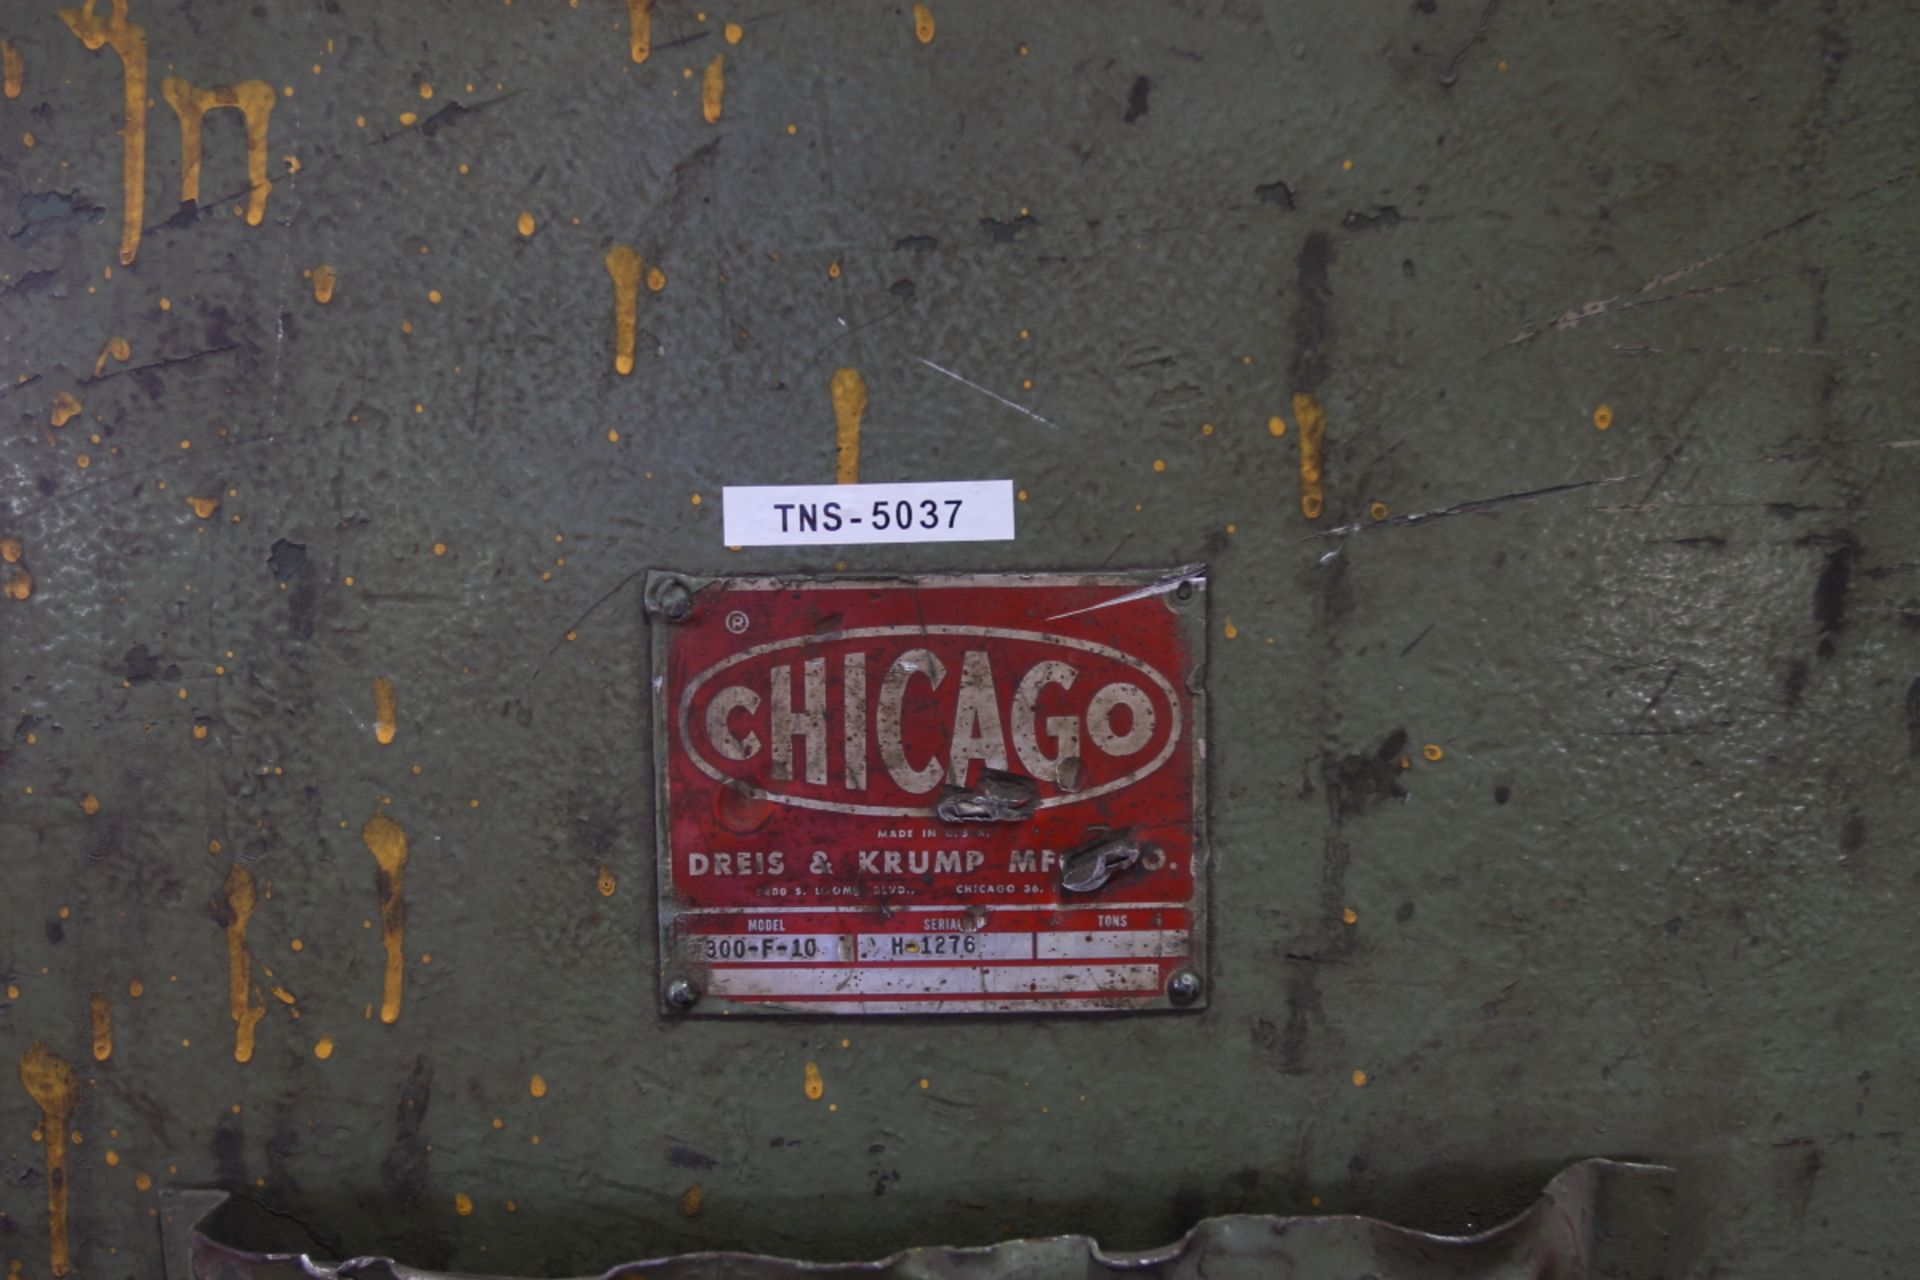 CHICAGO 300-F-10 Press Brake, (No Dies) - Image 4 of 4